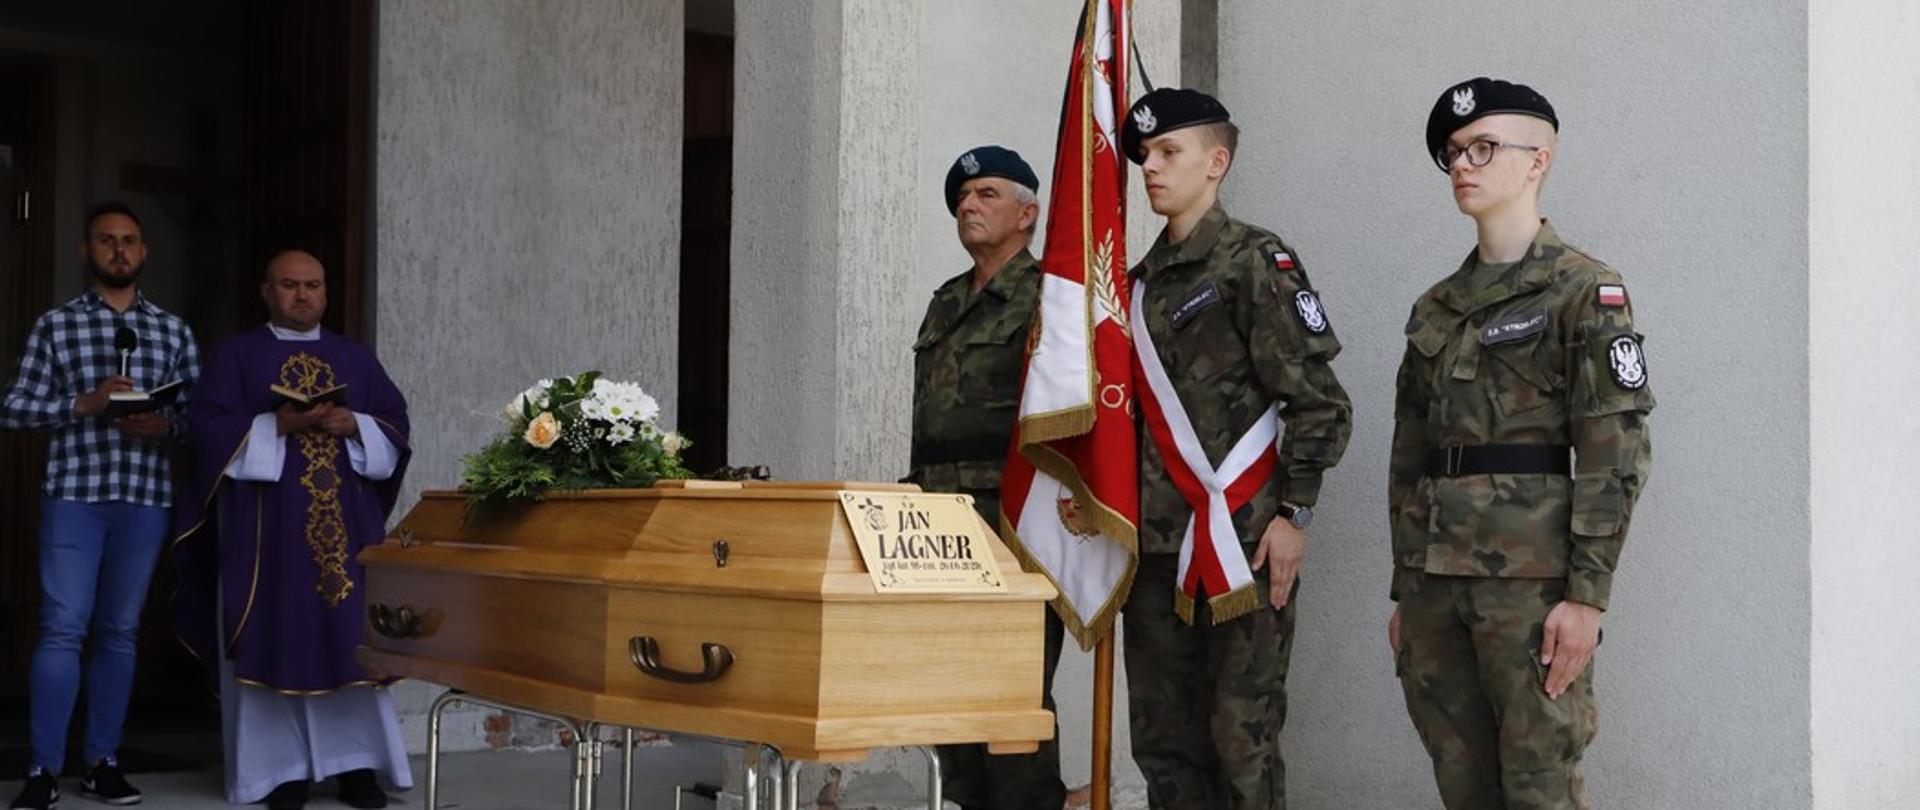 Uroczystość pogrzebowa porucznika Jana Lagnera